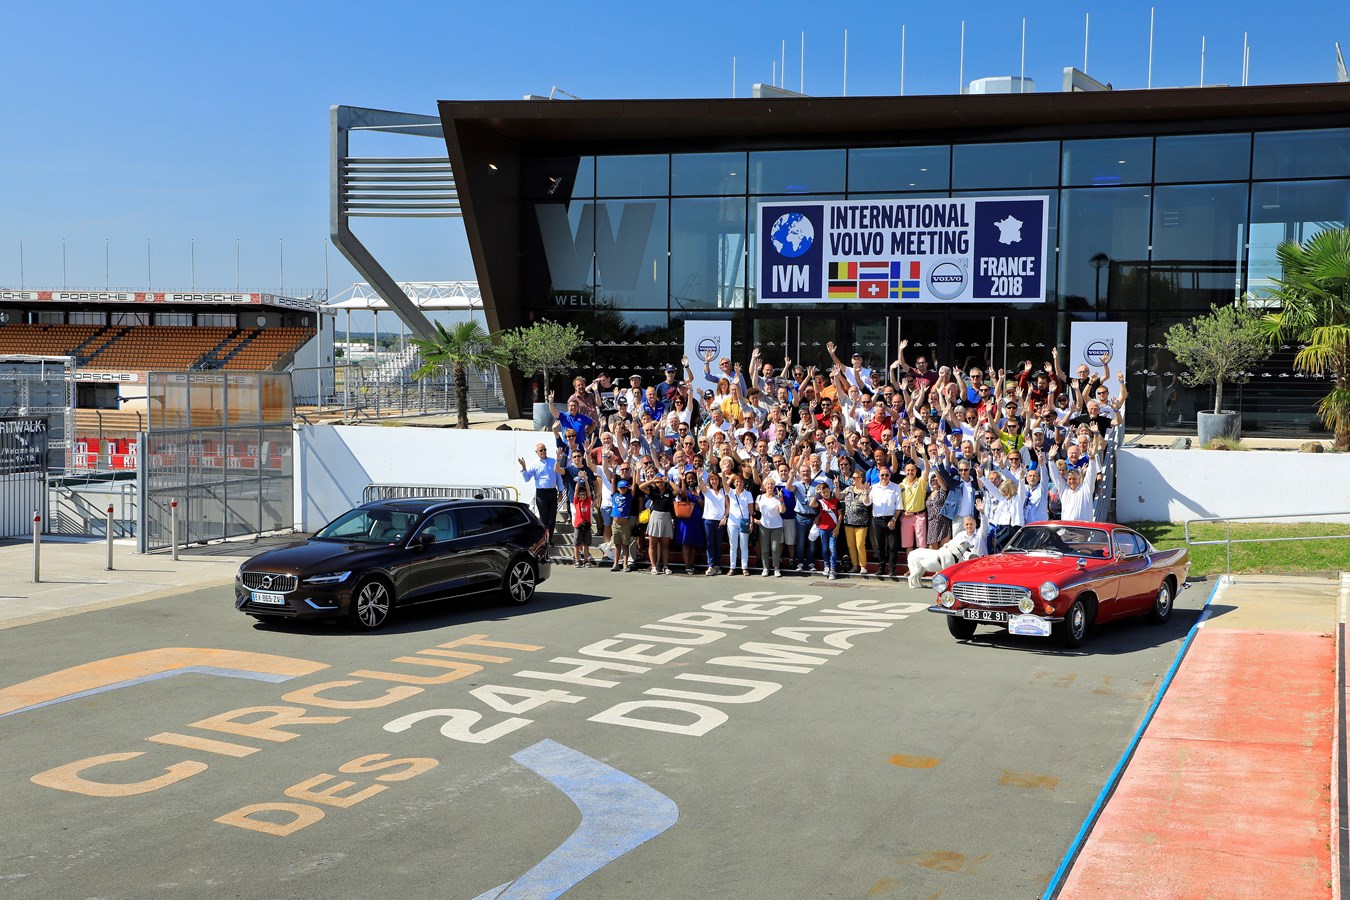 9ème édition de l’International Volvo Meeting (I.V.M) organisé par le Volvo Club de France au Mans du 31 août au 2 septembre.